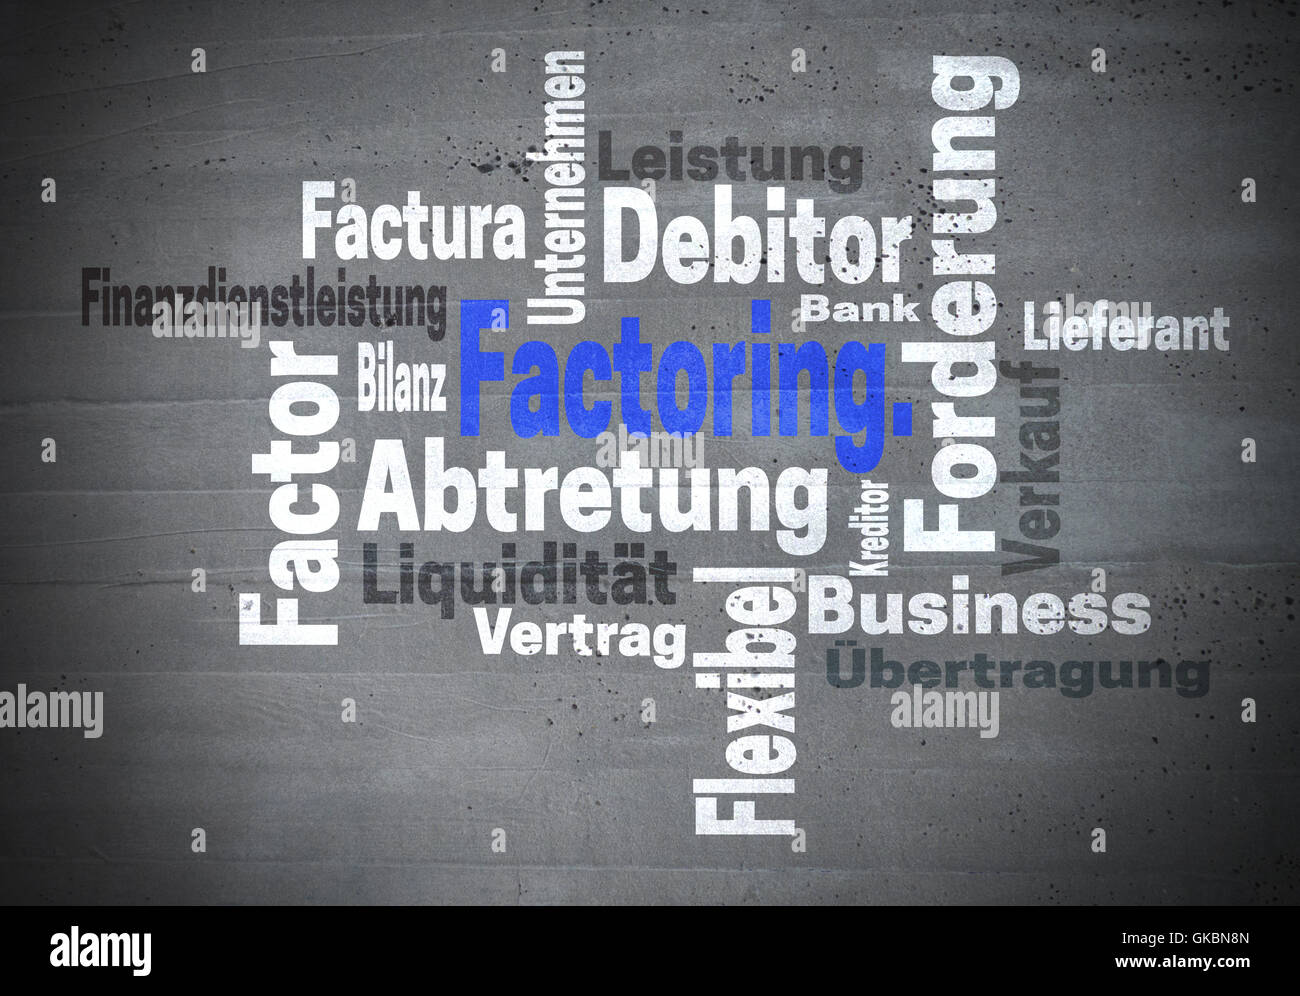 Il factoring Abtretung Finanzdienstleistung (in tedesco assegnazione servizi finanziari) concetto wordcloud. Foto Stock